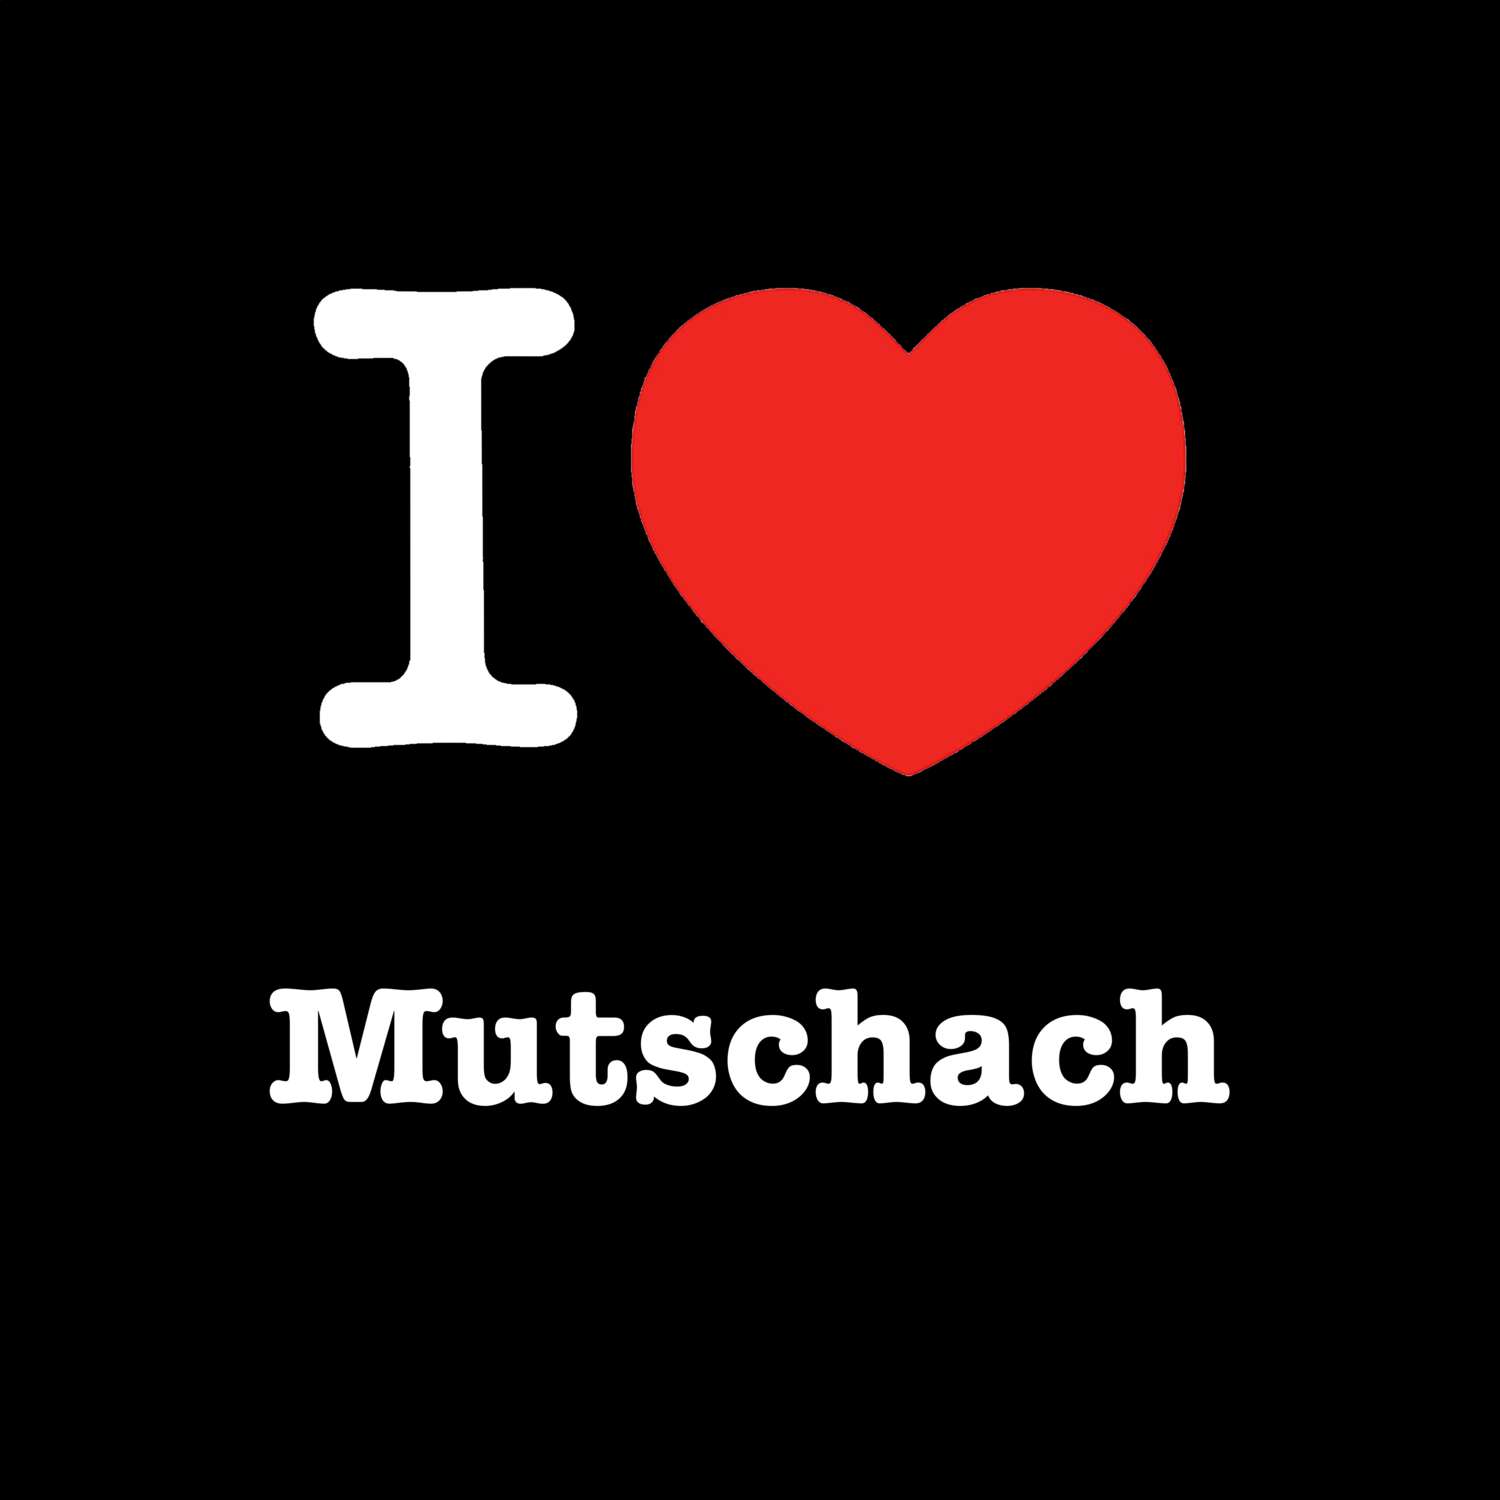 Mutschach T-Shirt »I love«